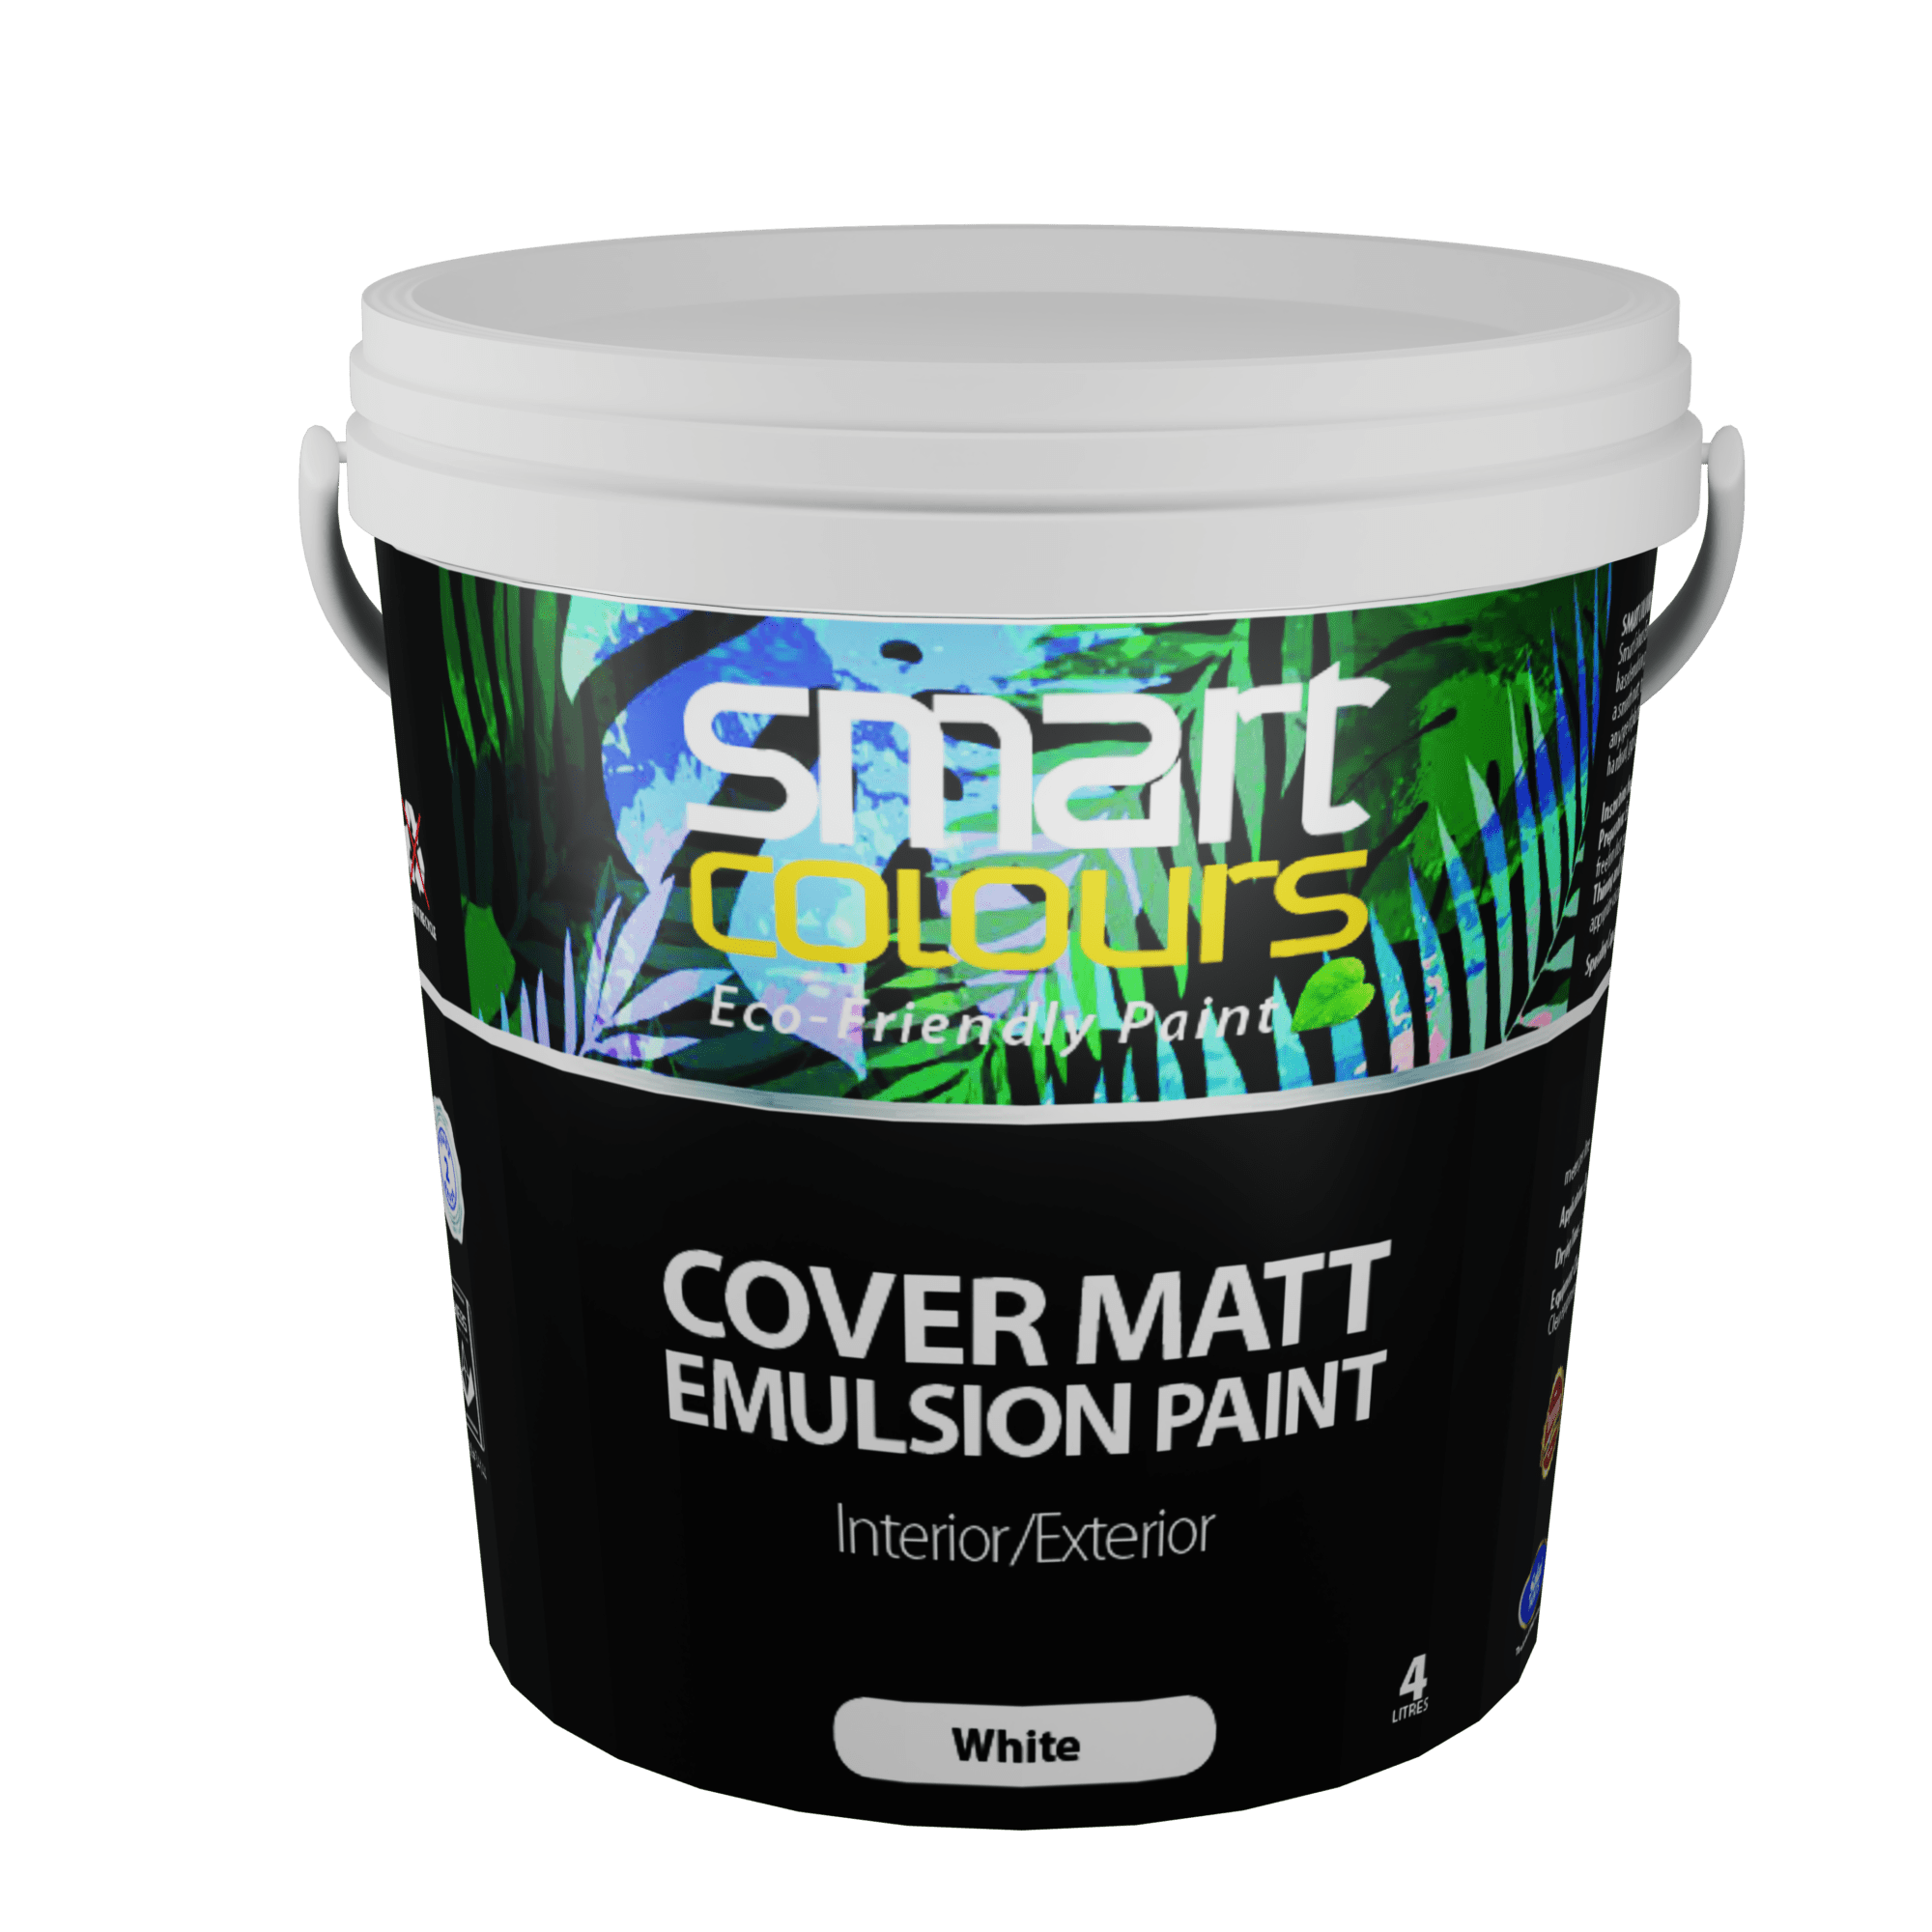 Solai Covermatt Emullsion Paint, Covermatt Paint, Best Ceiling Paint, Best Undercoat, Affordable interior paint